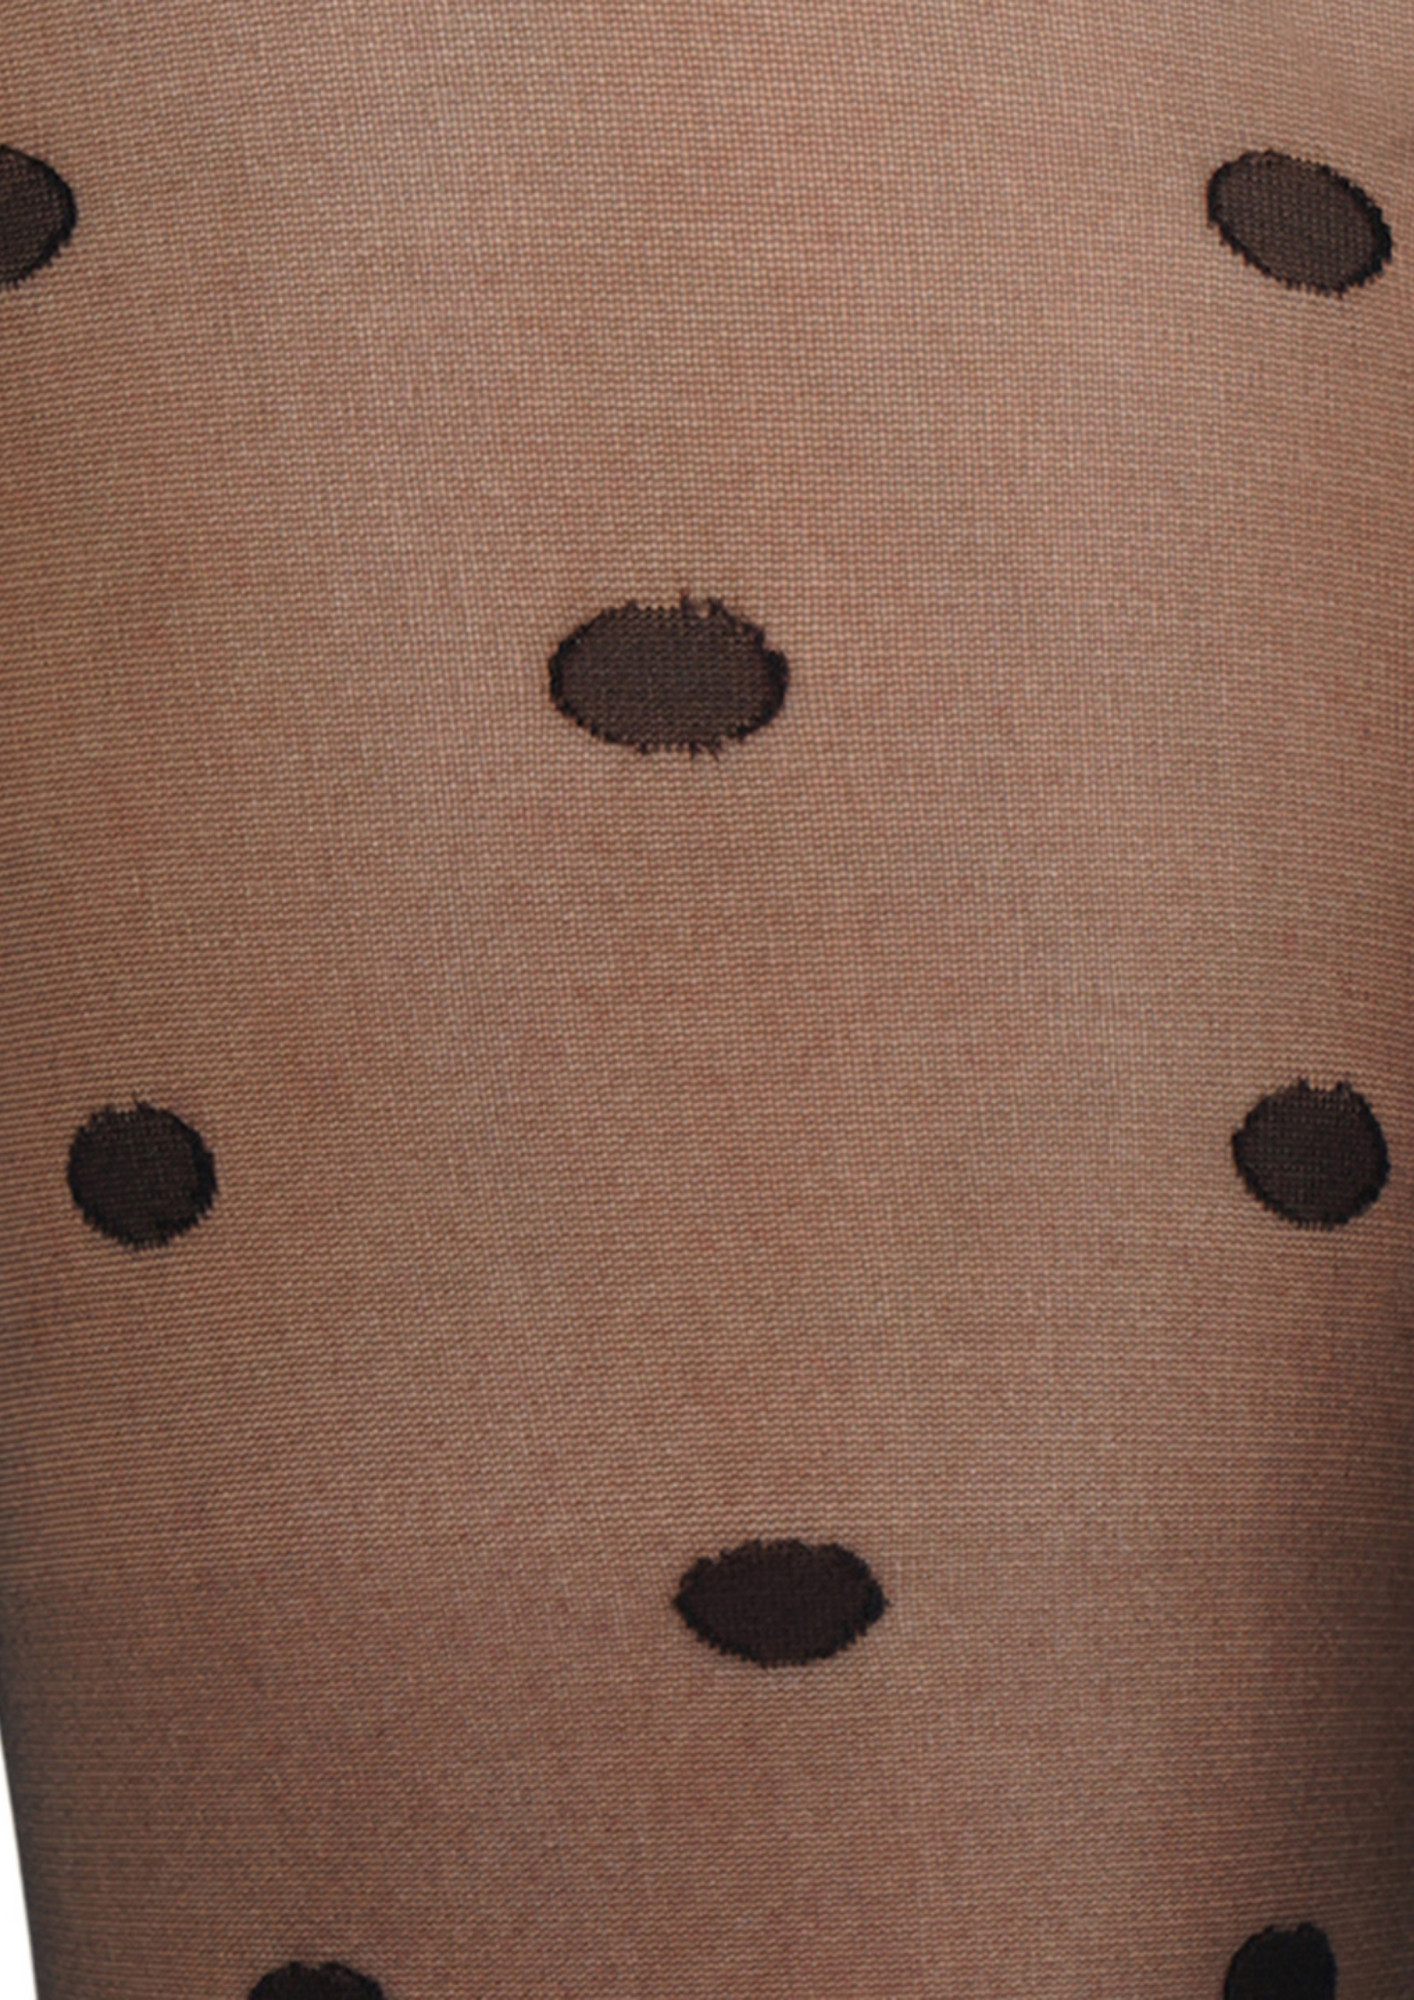 Buy NEXT2SKIN Women's Nylon Sheer Transparent Pattern Pantyhose Stocking ( Black)-N2S203-20 for Women Online in India